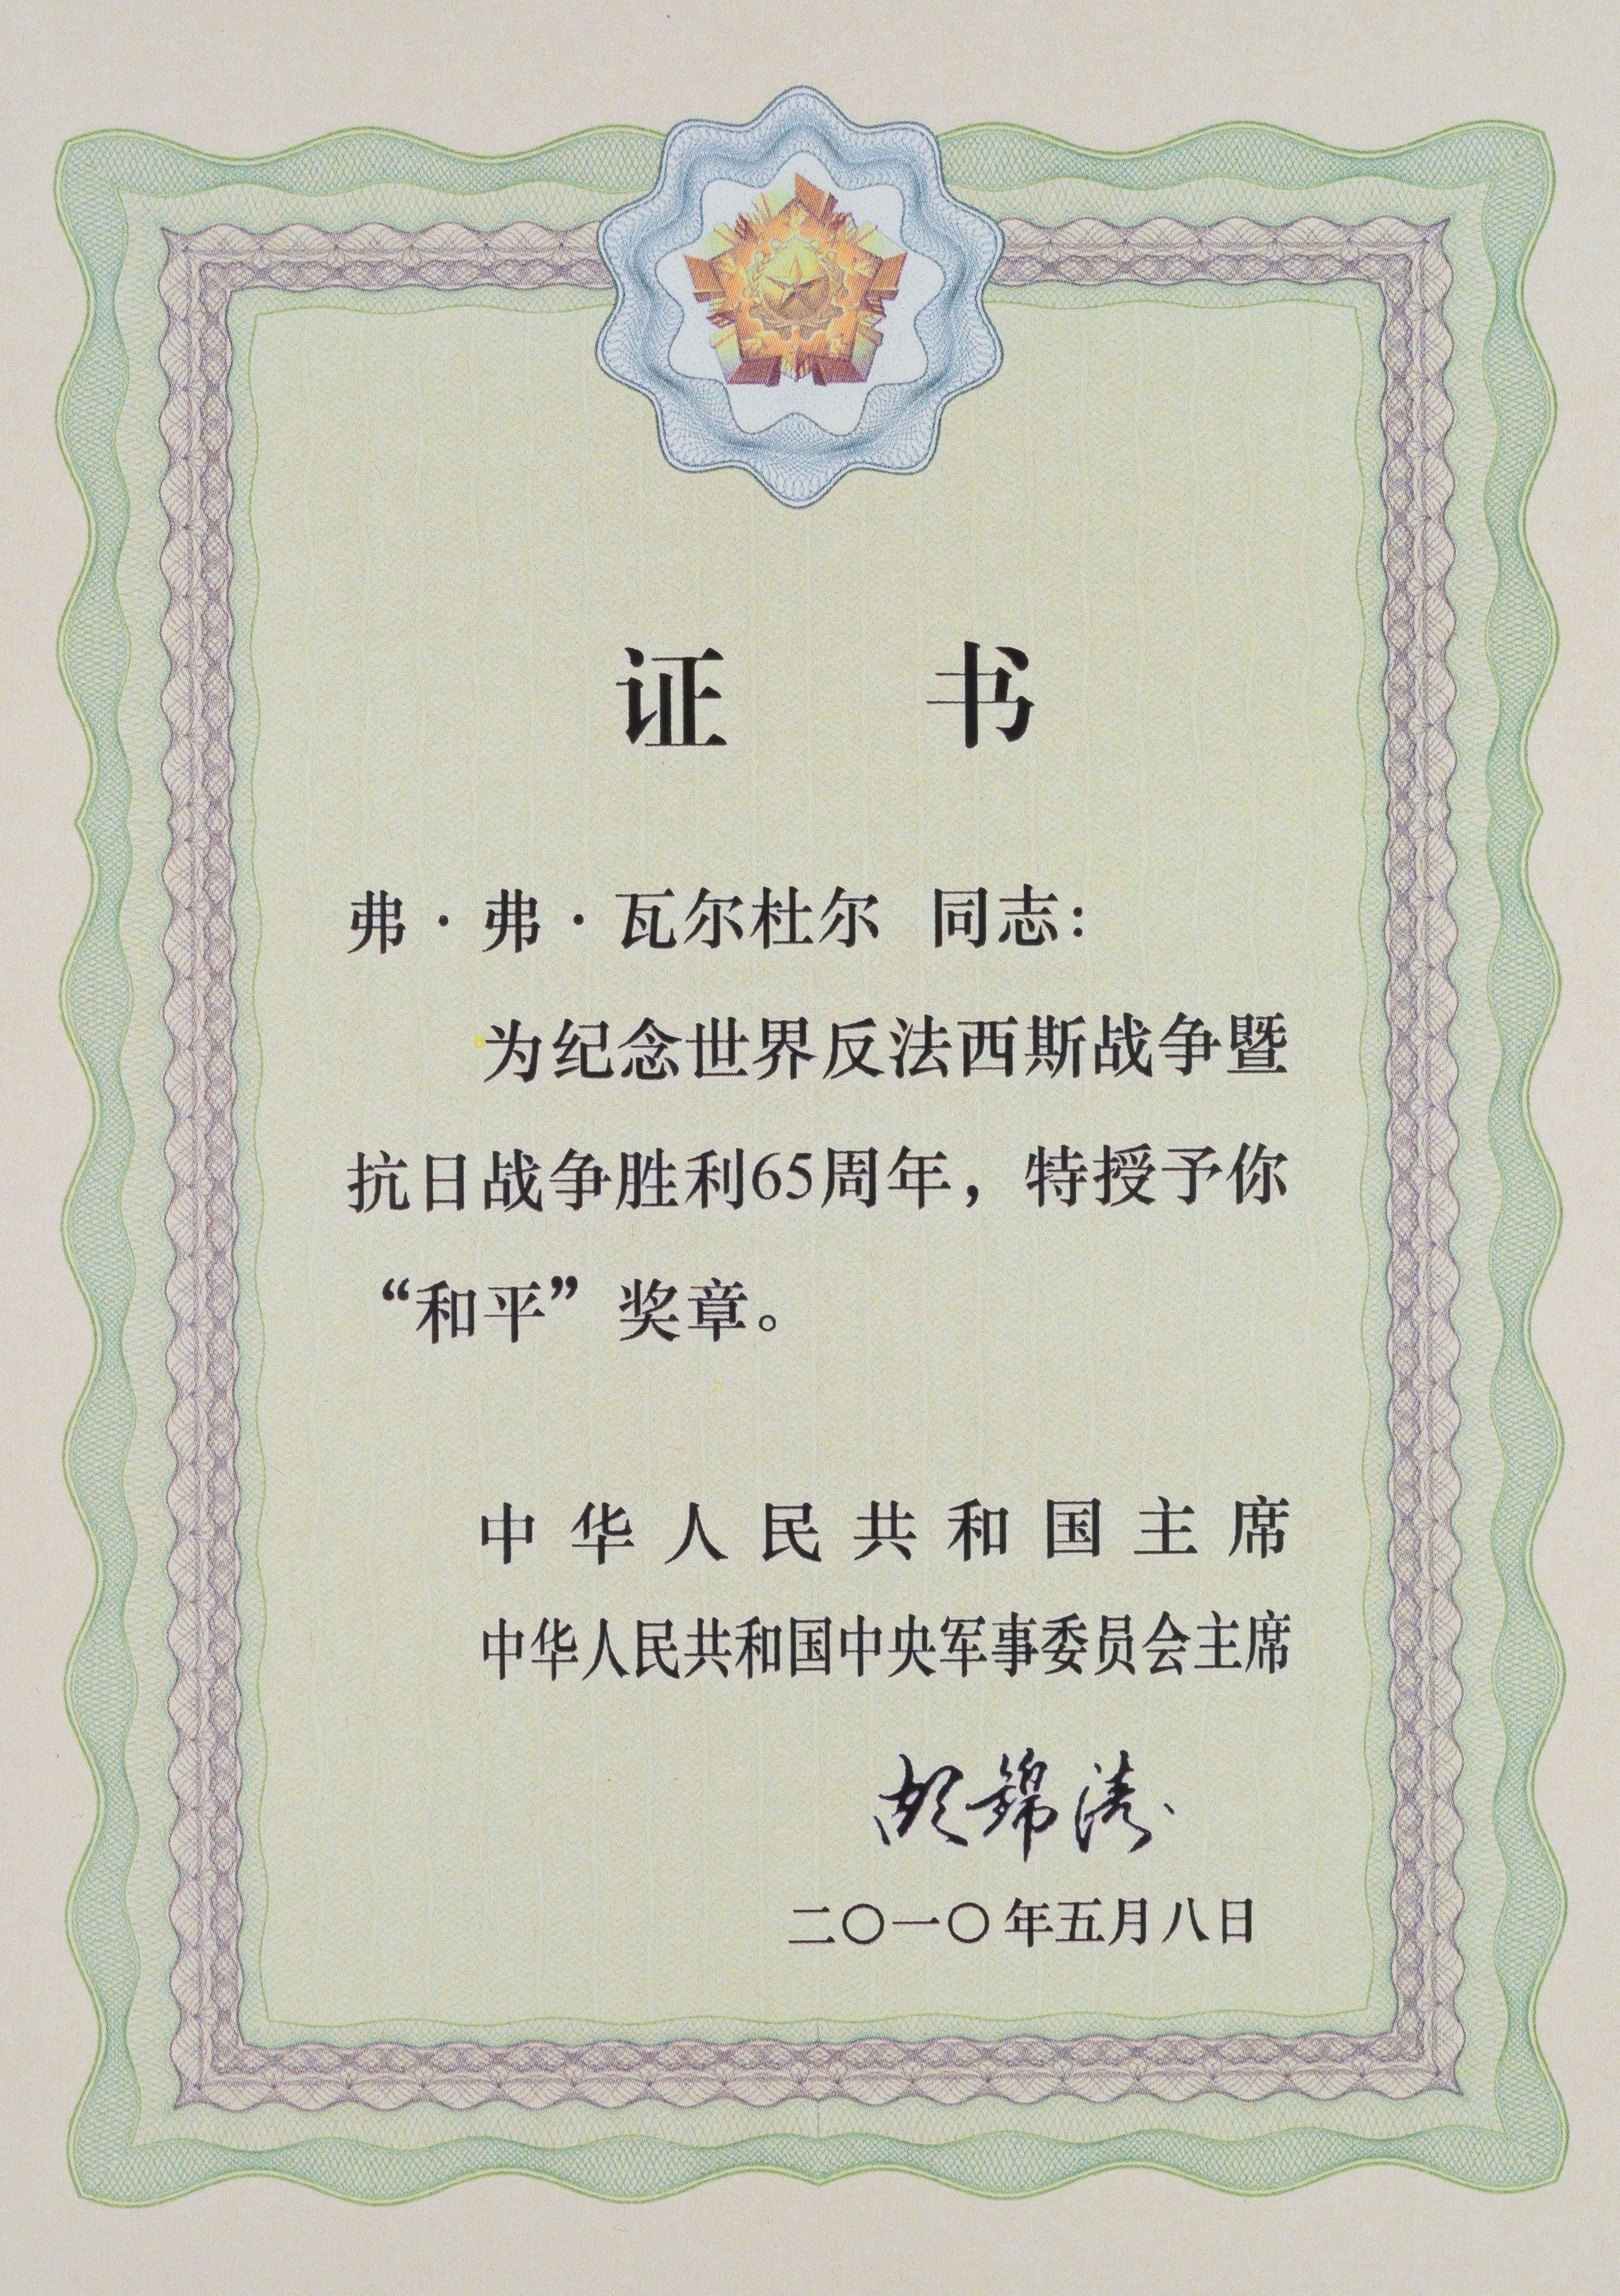 Медаль «Мир» в честь 65-летия Победы над фашизмом и войне с японскими захватчиками.<br>Китай, 2010 г.